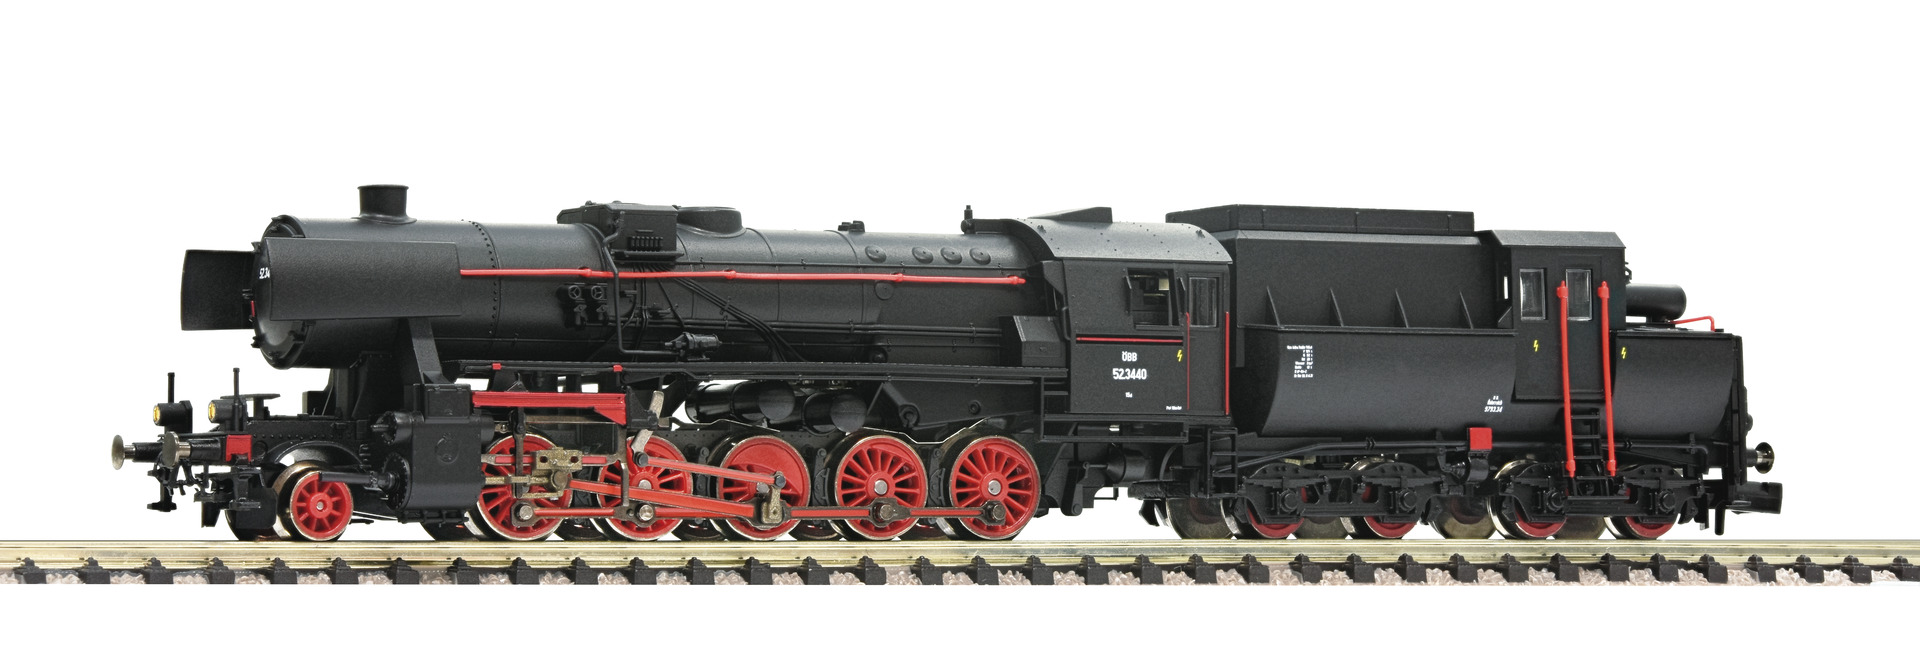 Fleischmann – Locomotora Vapor clase 52.3440, OBB, Epoca III-IV, D. Sonido, Escala N, Ref: 715292.